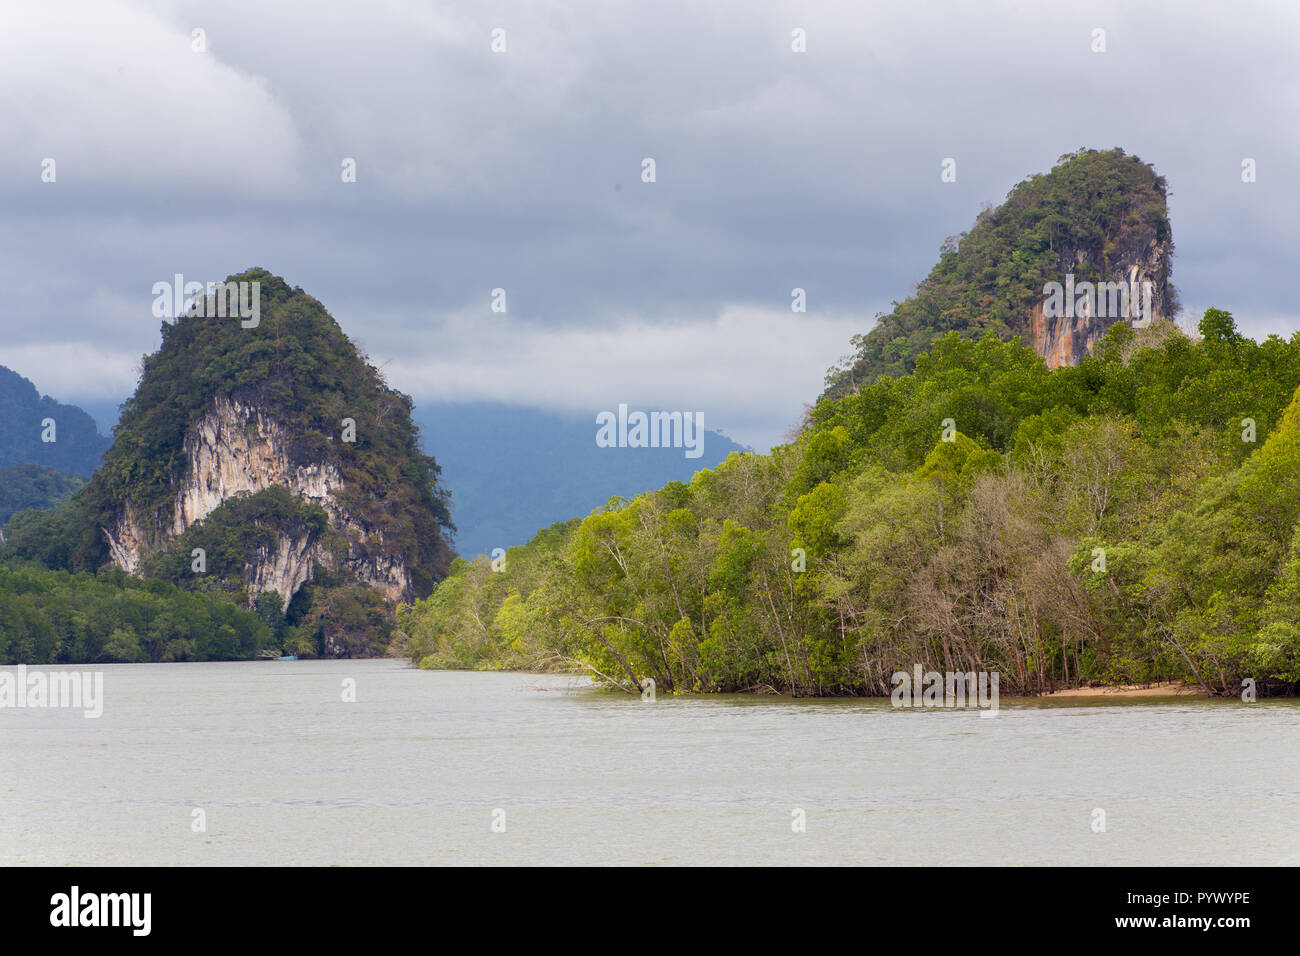 Saint-martin-rivière paysage dans le sud de la Thaïlande Banque D'Images